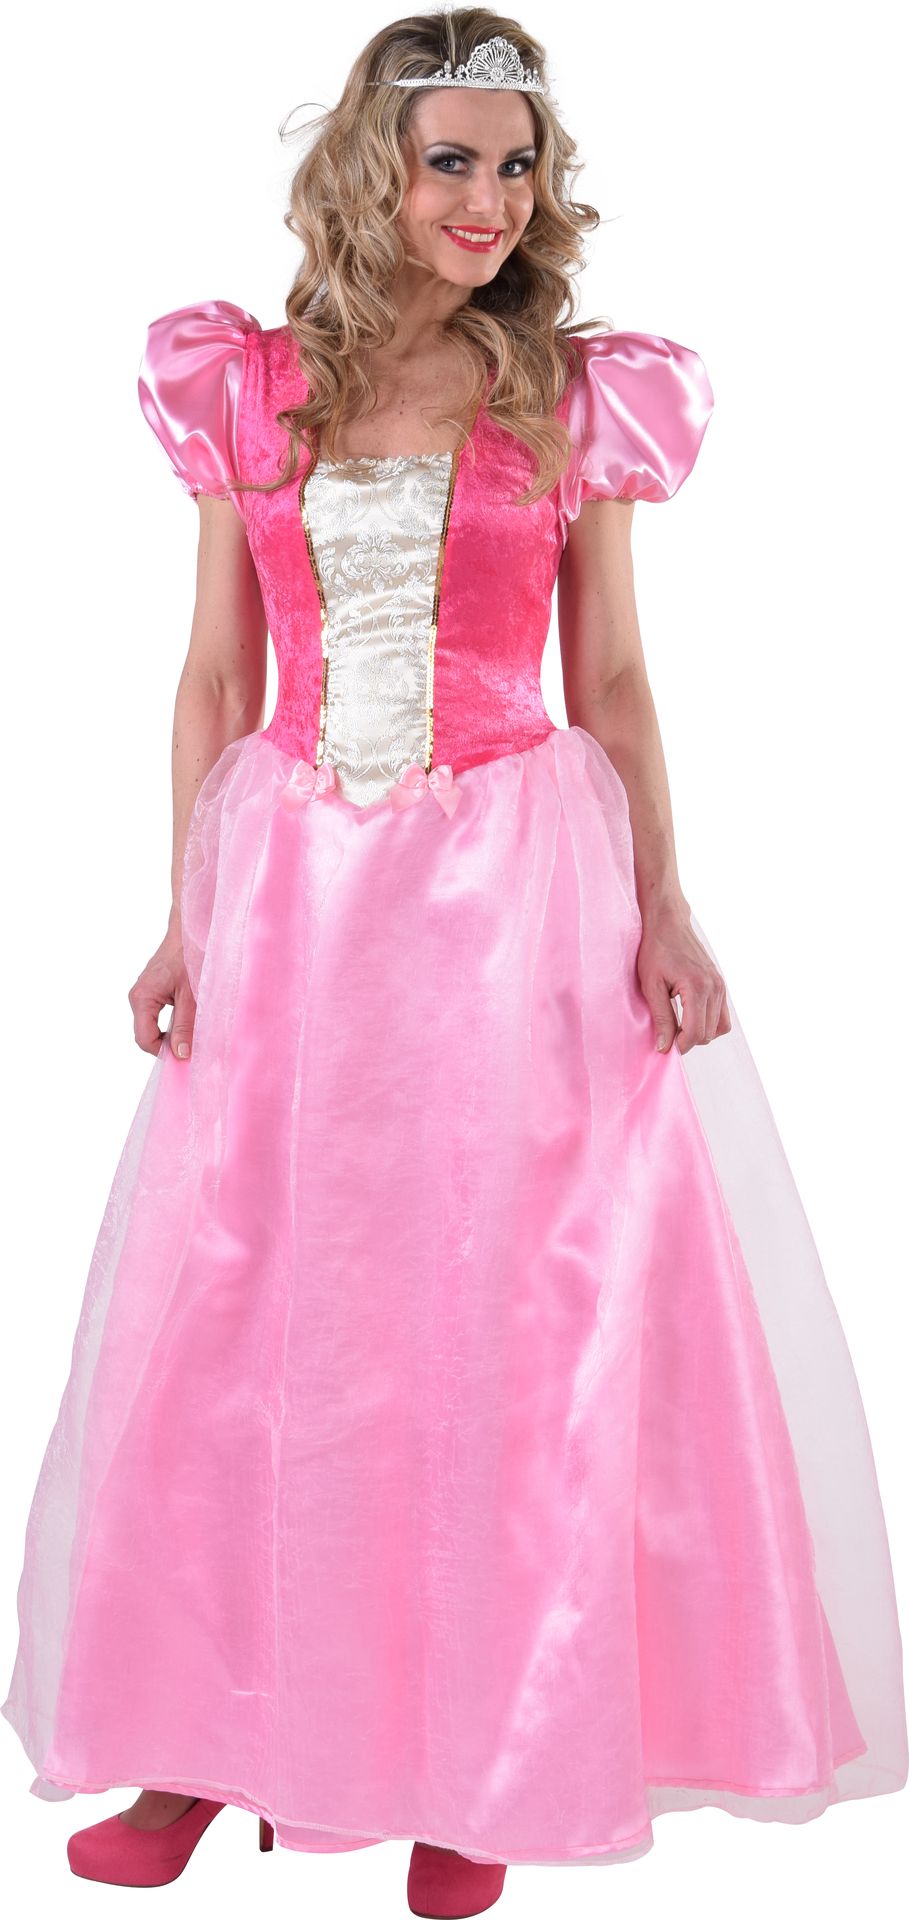 Betere Roze lange prinses jurk | Carnavalskleding.nl ZA-15